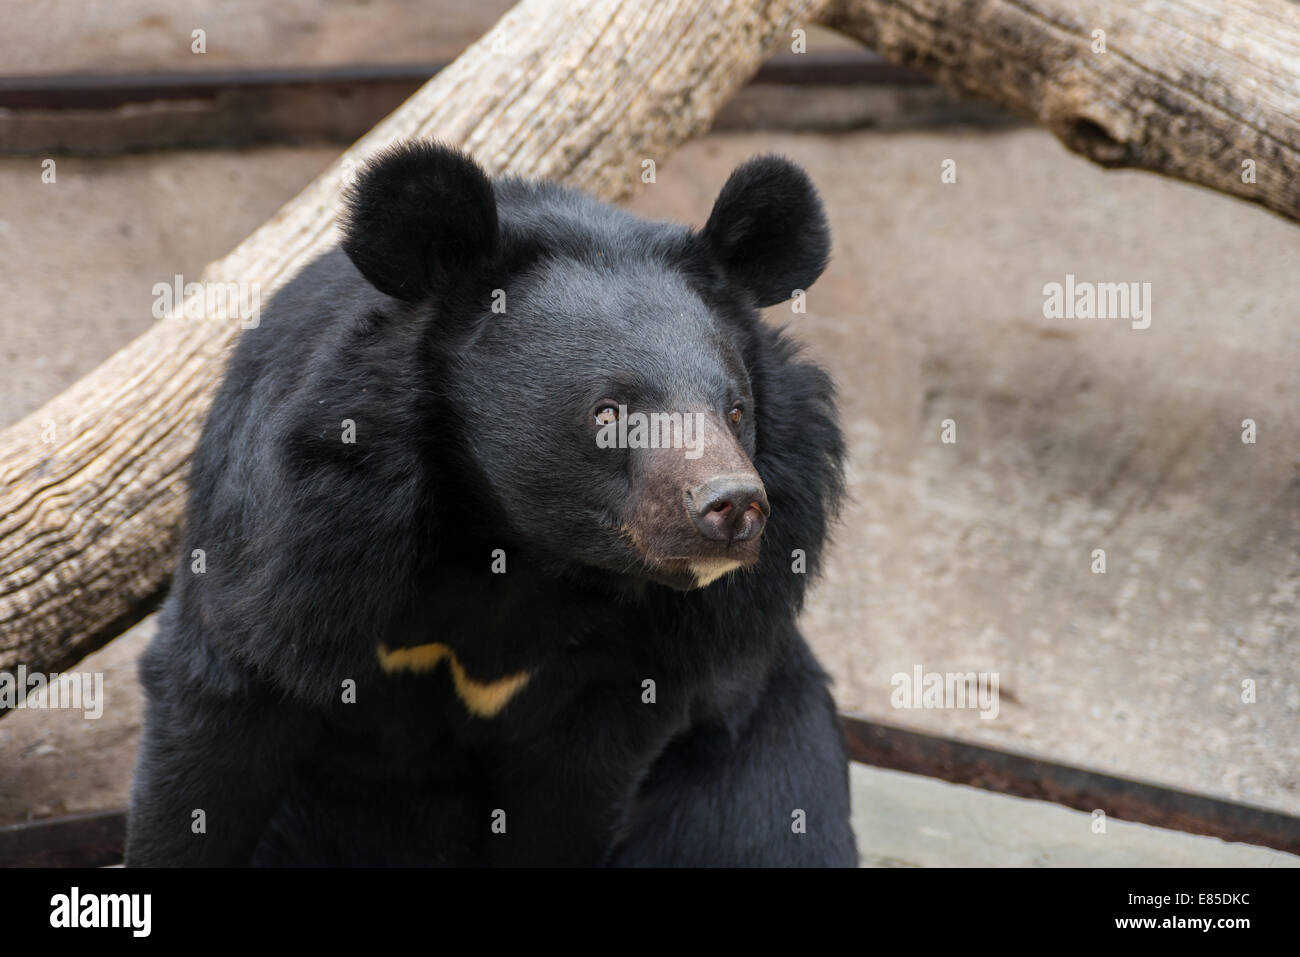 Black bear in a zoo in ukraina Stock Photo